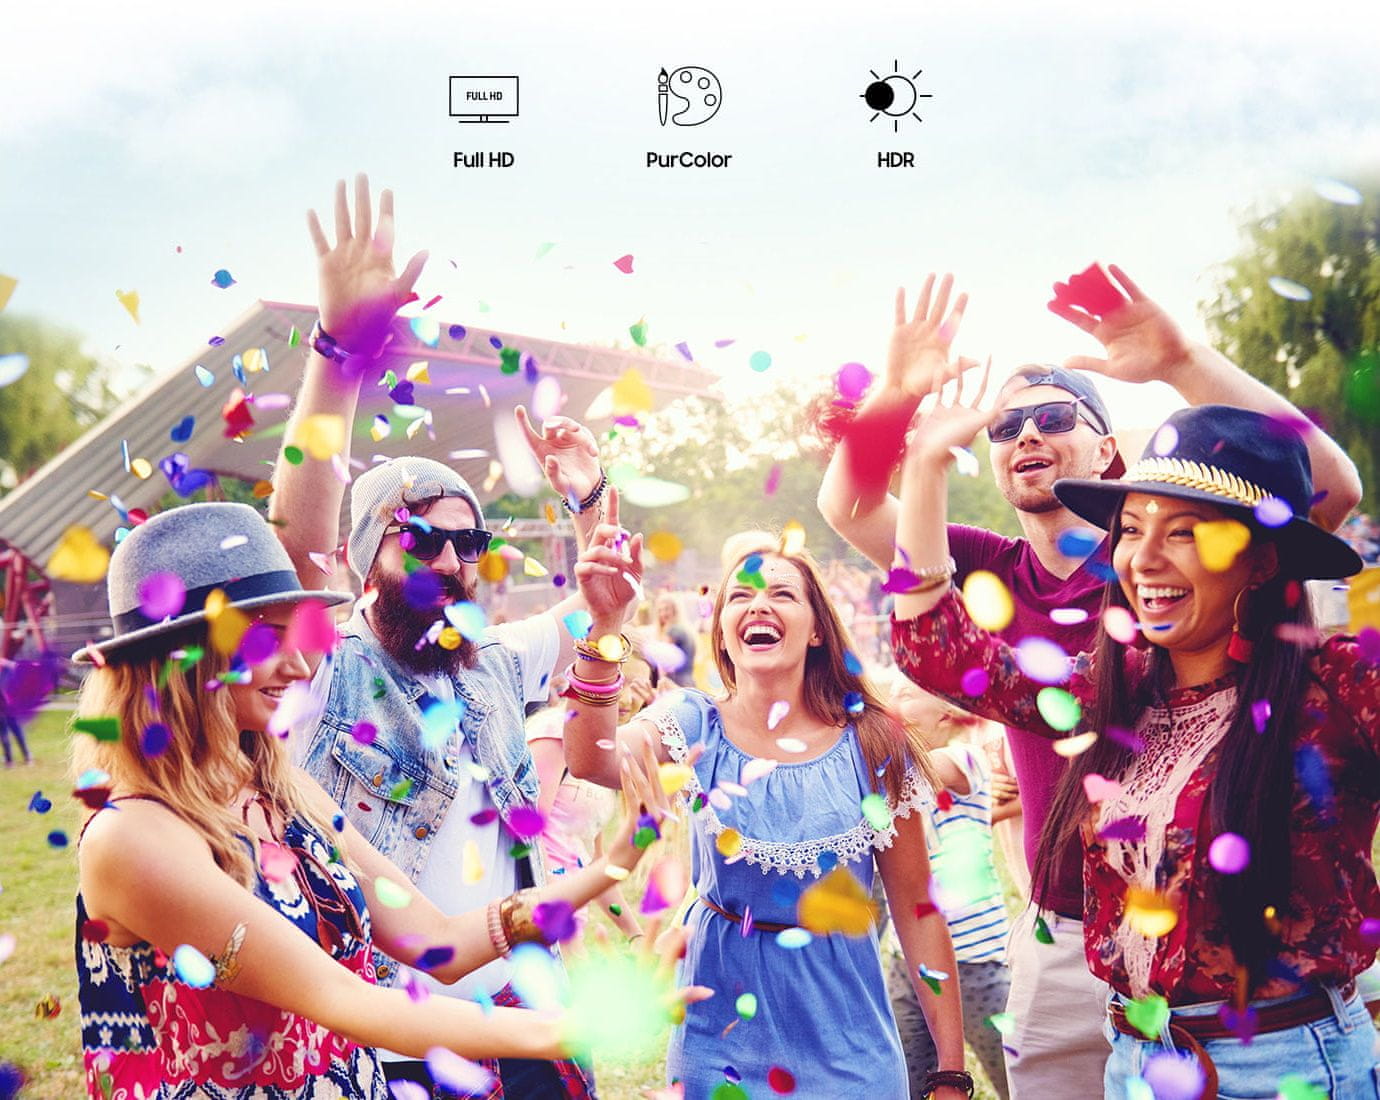 Domači kino Samsung SP-LSP7TFA (SP-LSP3BLAXXH), ločljivost Full HD, realistična slika, pristne barve